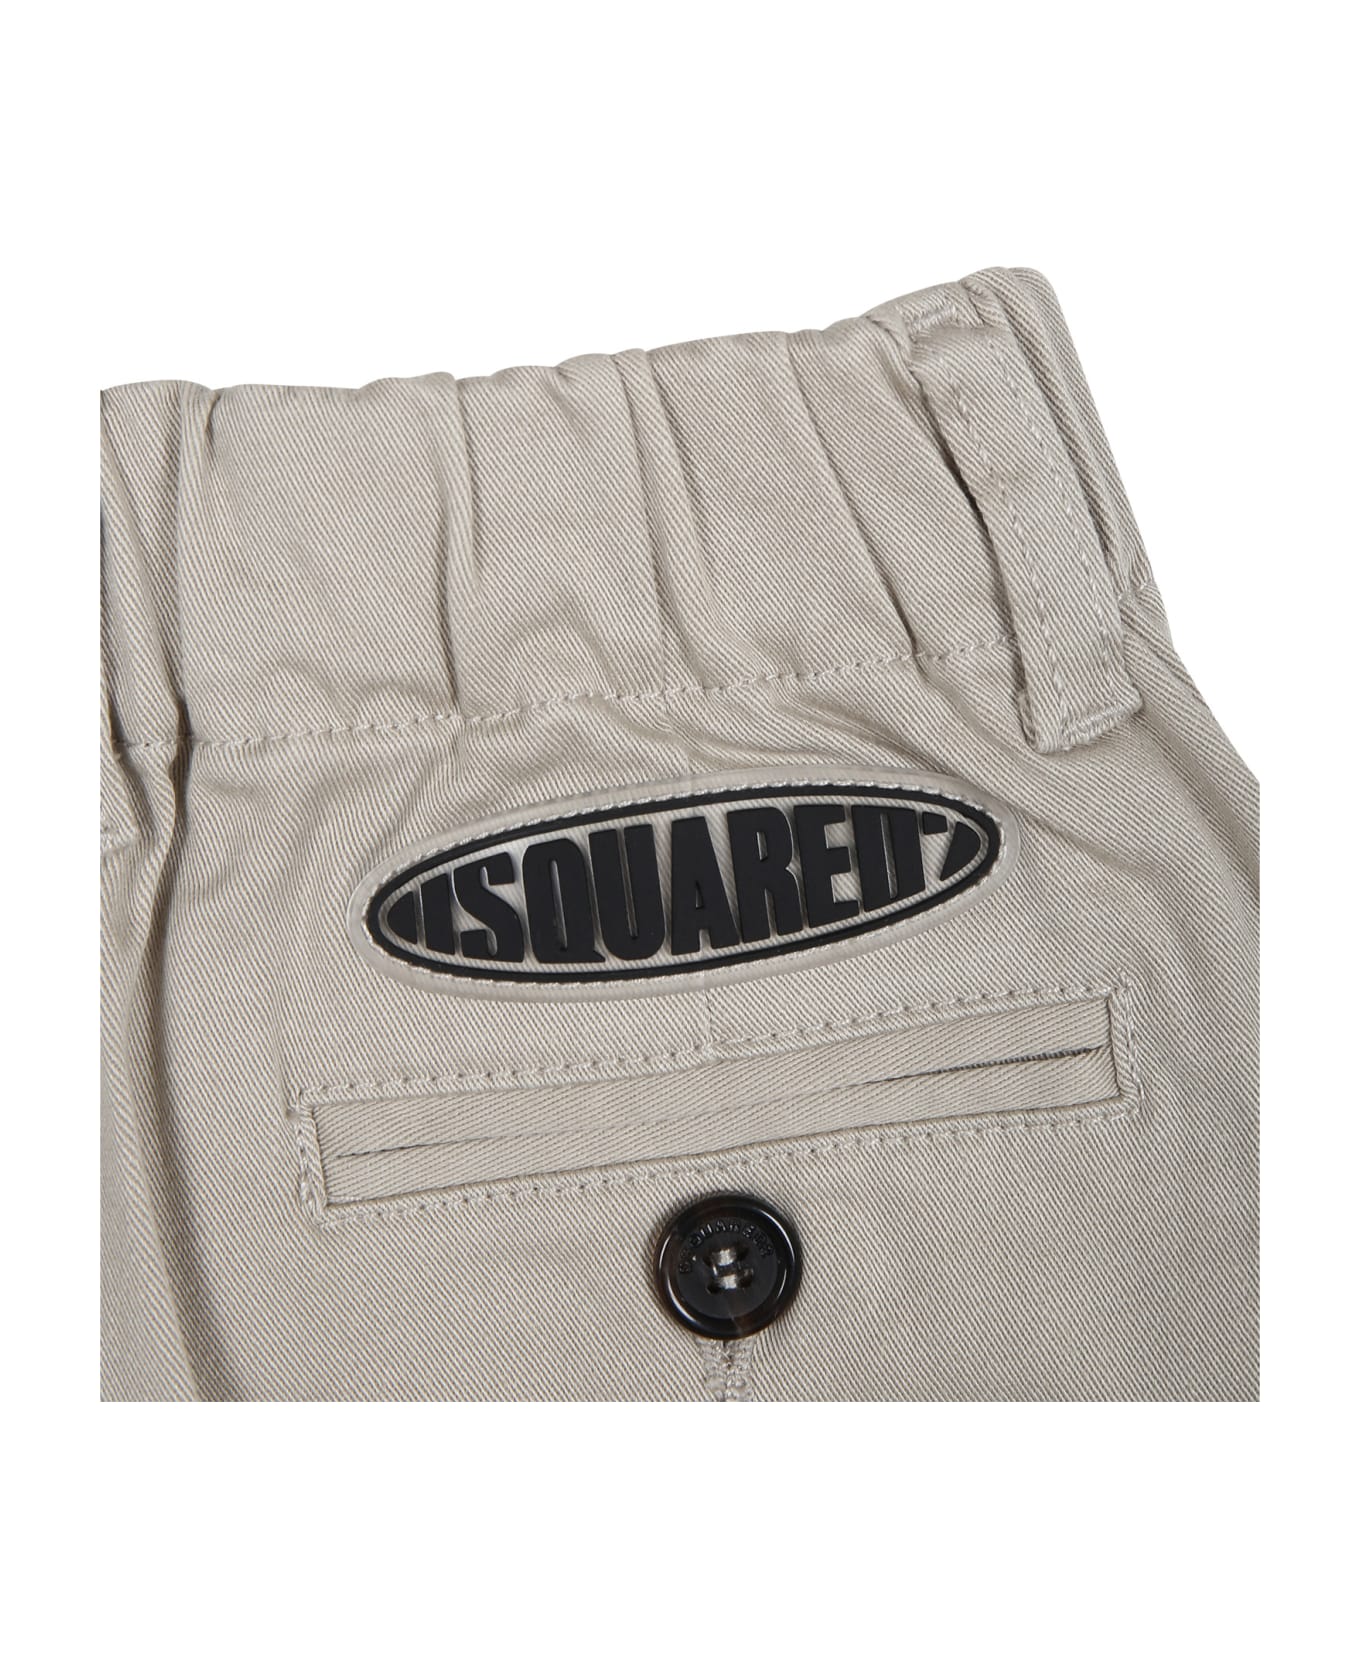 Dsquared2 Pantaloni Beige Per Neonato Con Logo - Beige